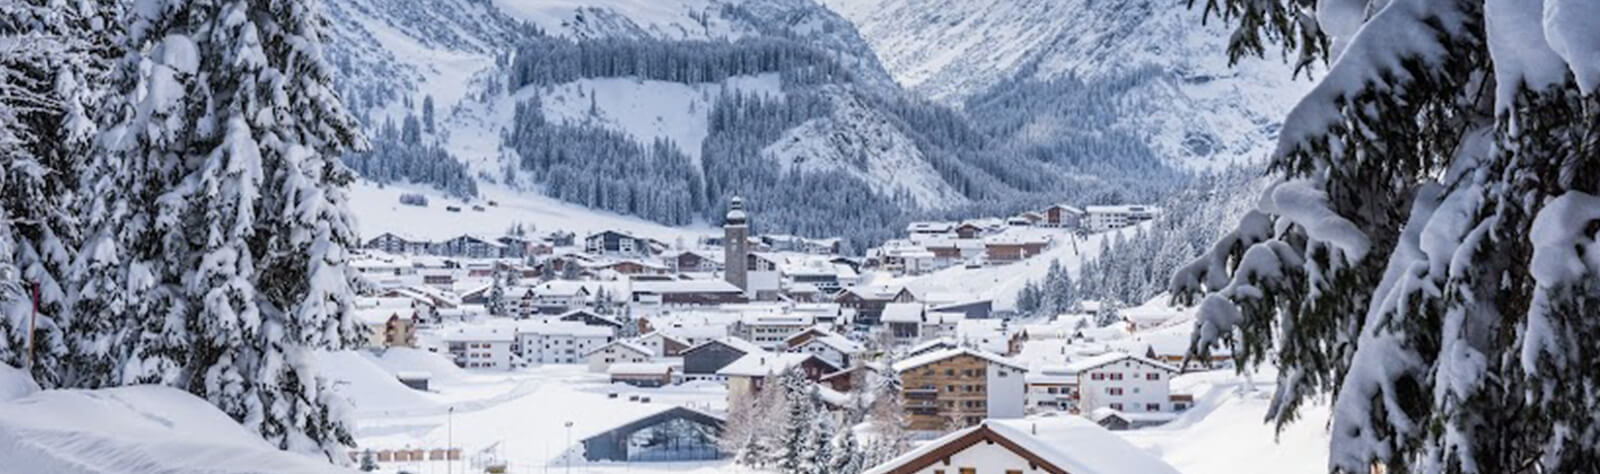 Ski Hotels in Austria